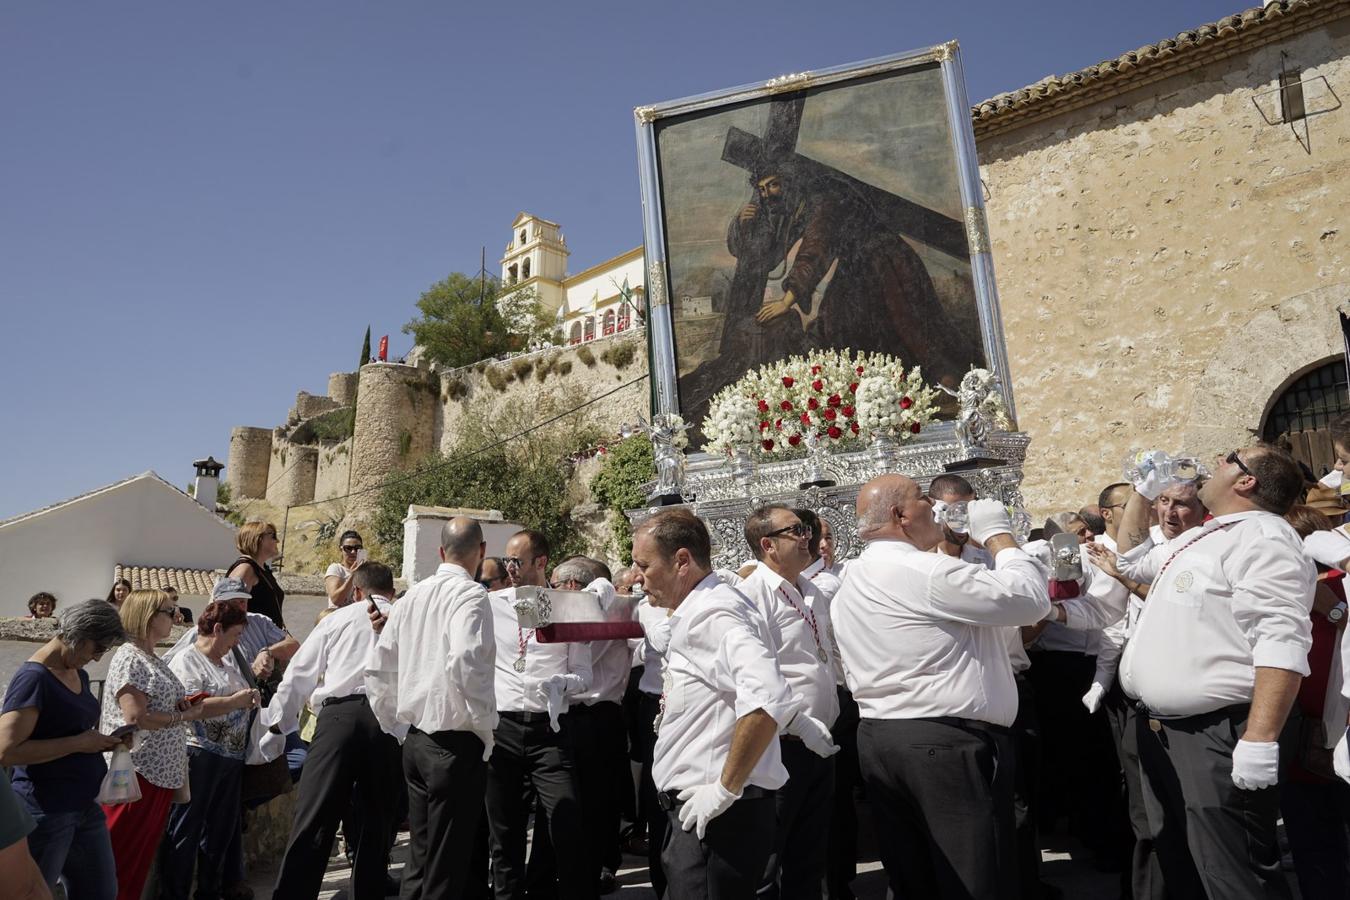 La devoción y costumbre en torno a este lienzo religioso concentra en Moclín a numerosos visitantes en una de las romerías más antiguas y multitudinarias de Andalucía